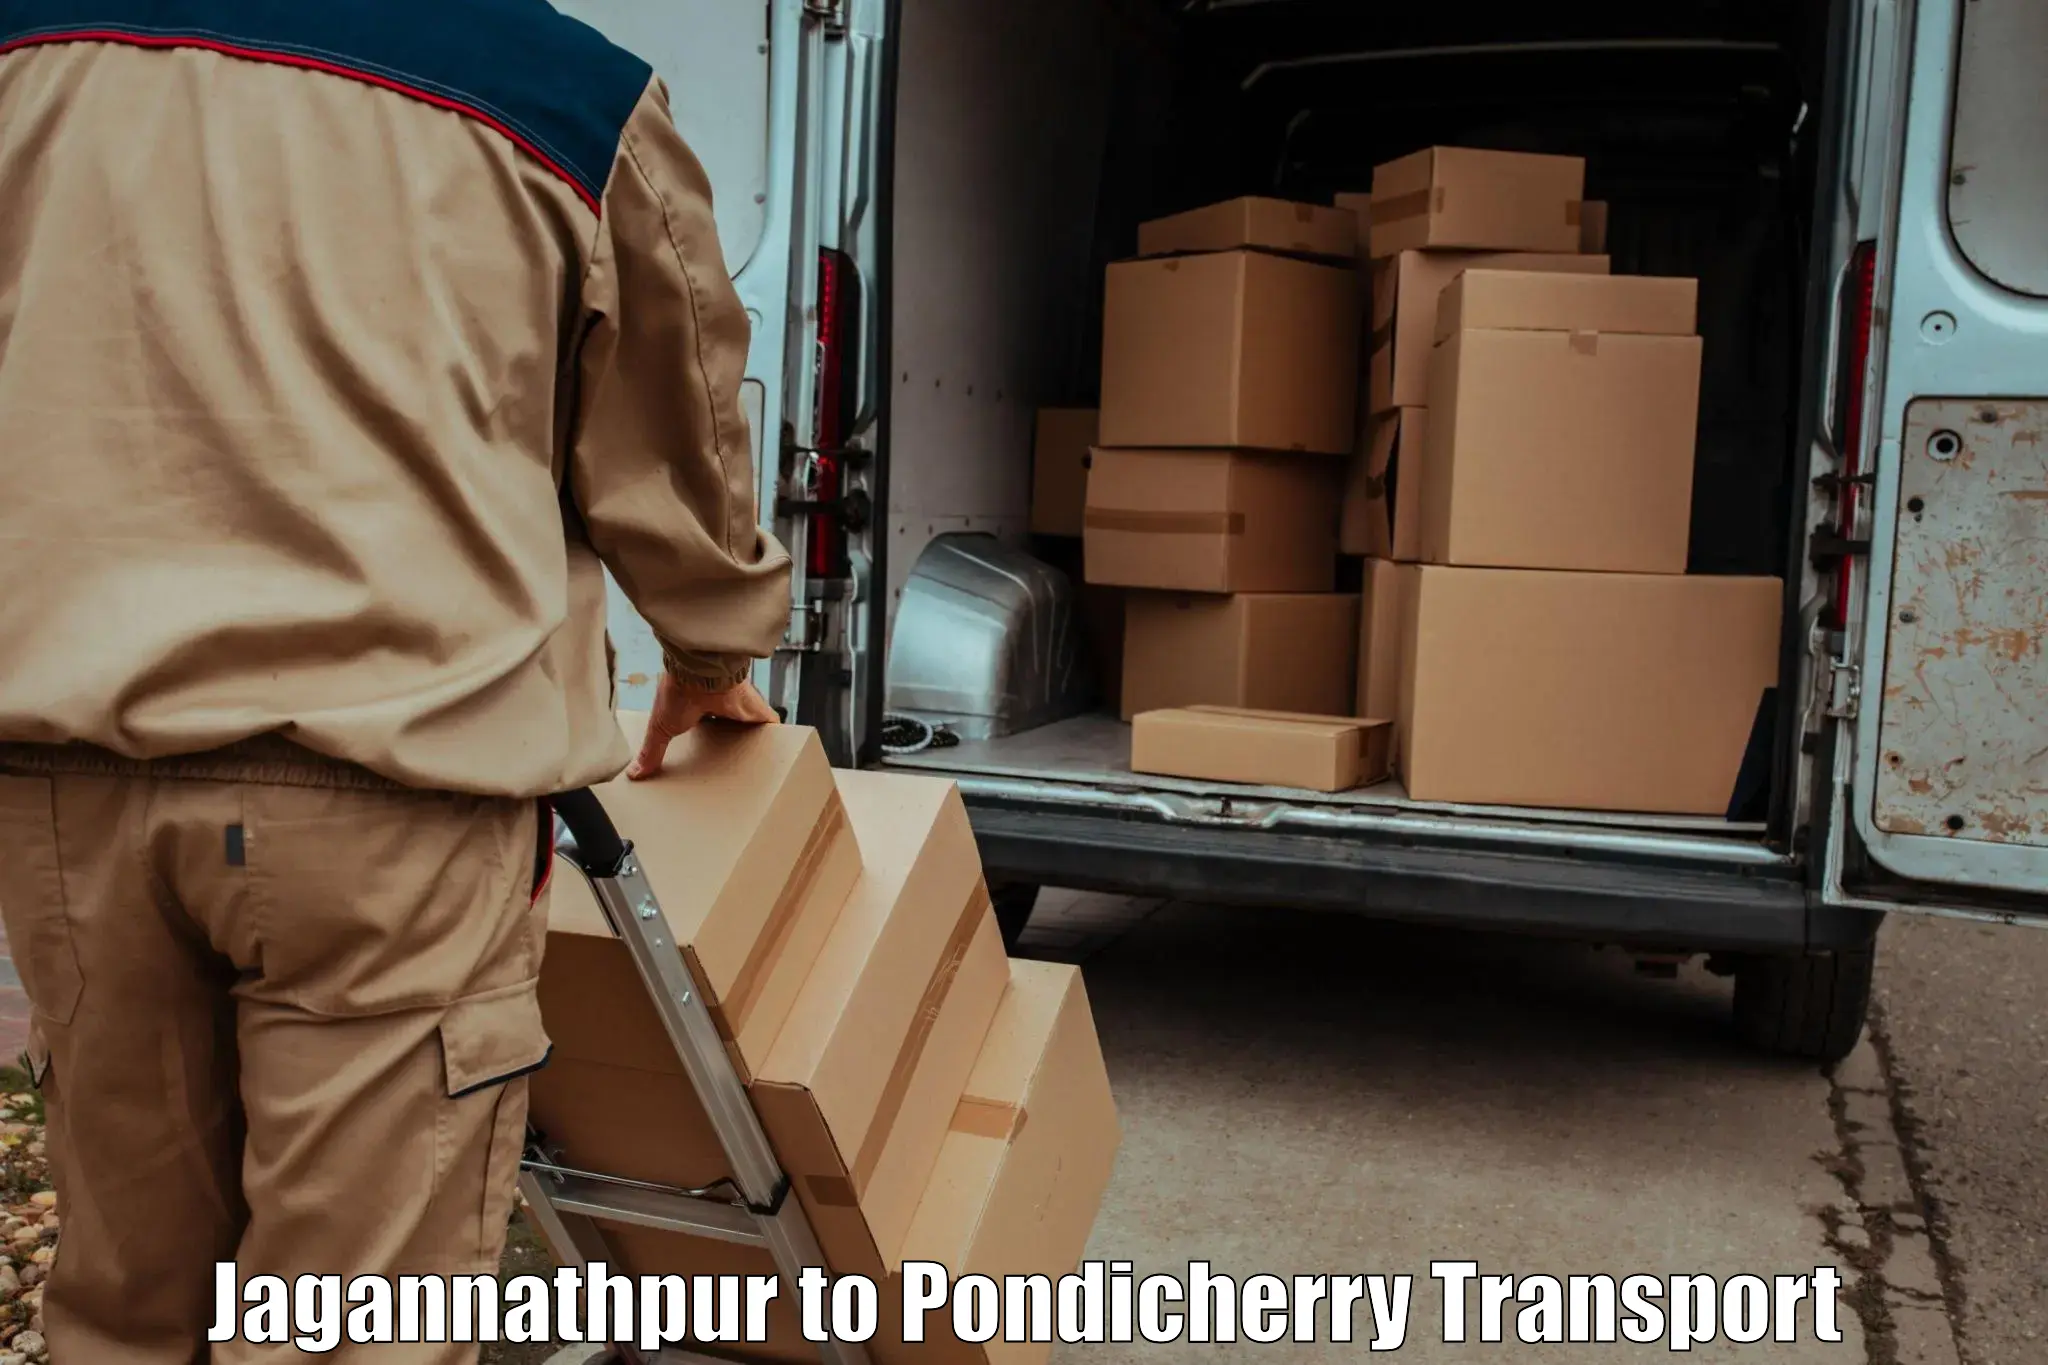 Interstate transport services Jagannathpur to Pondicherry